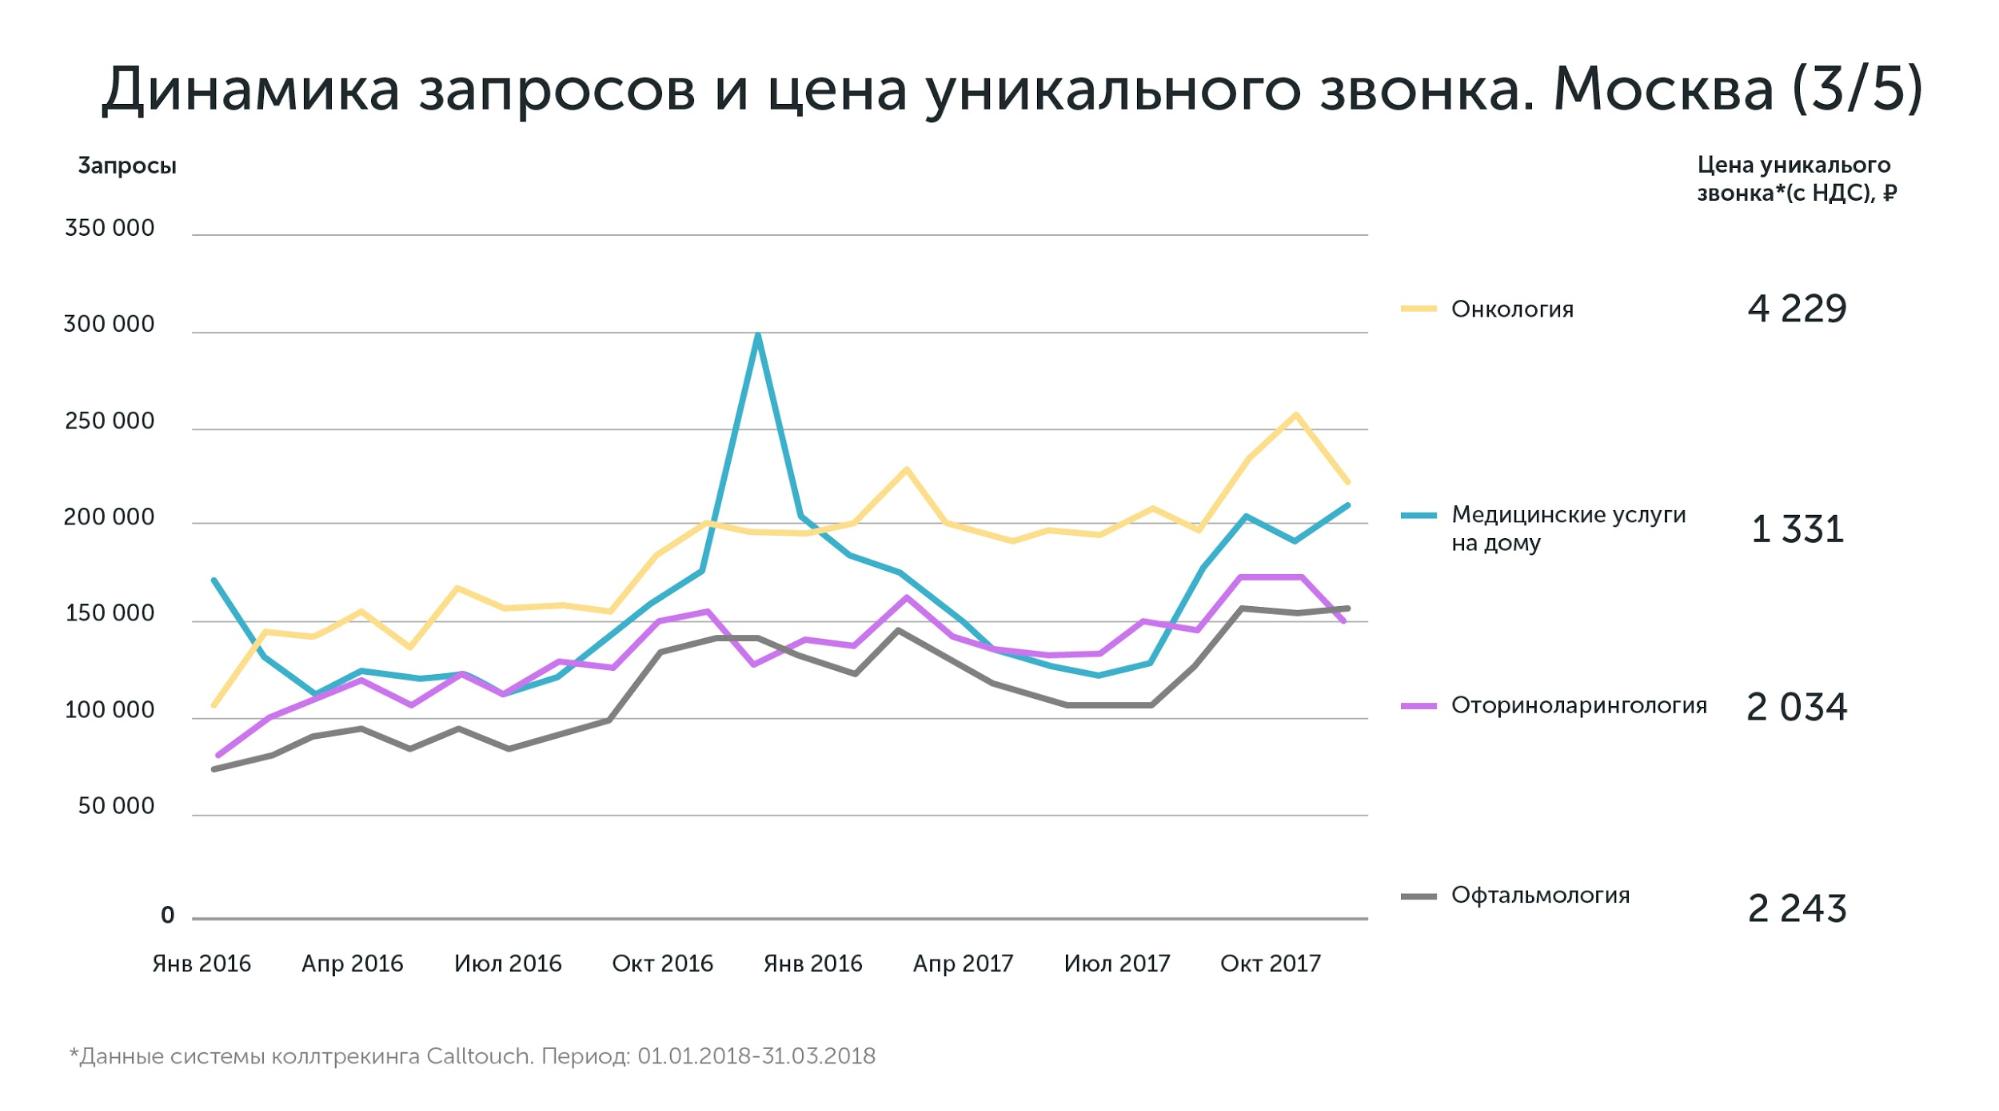 Данные по Москве и Московской области по стоимости привлечения лидов в медицине